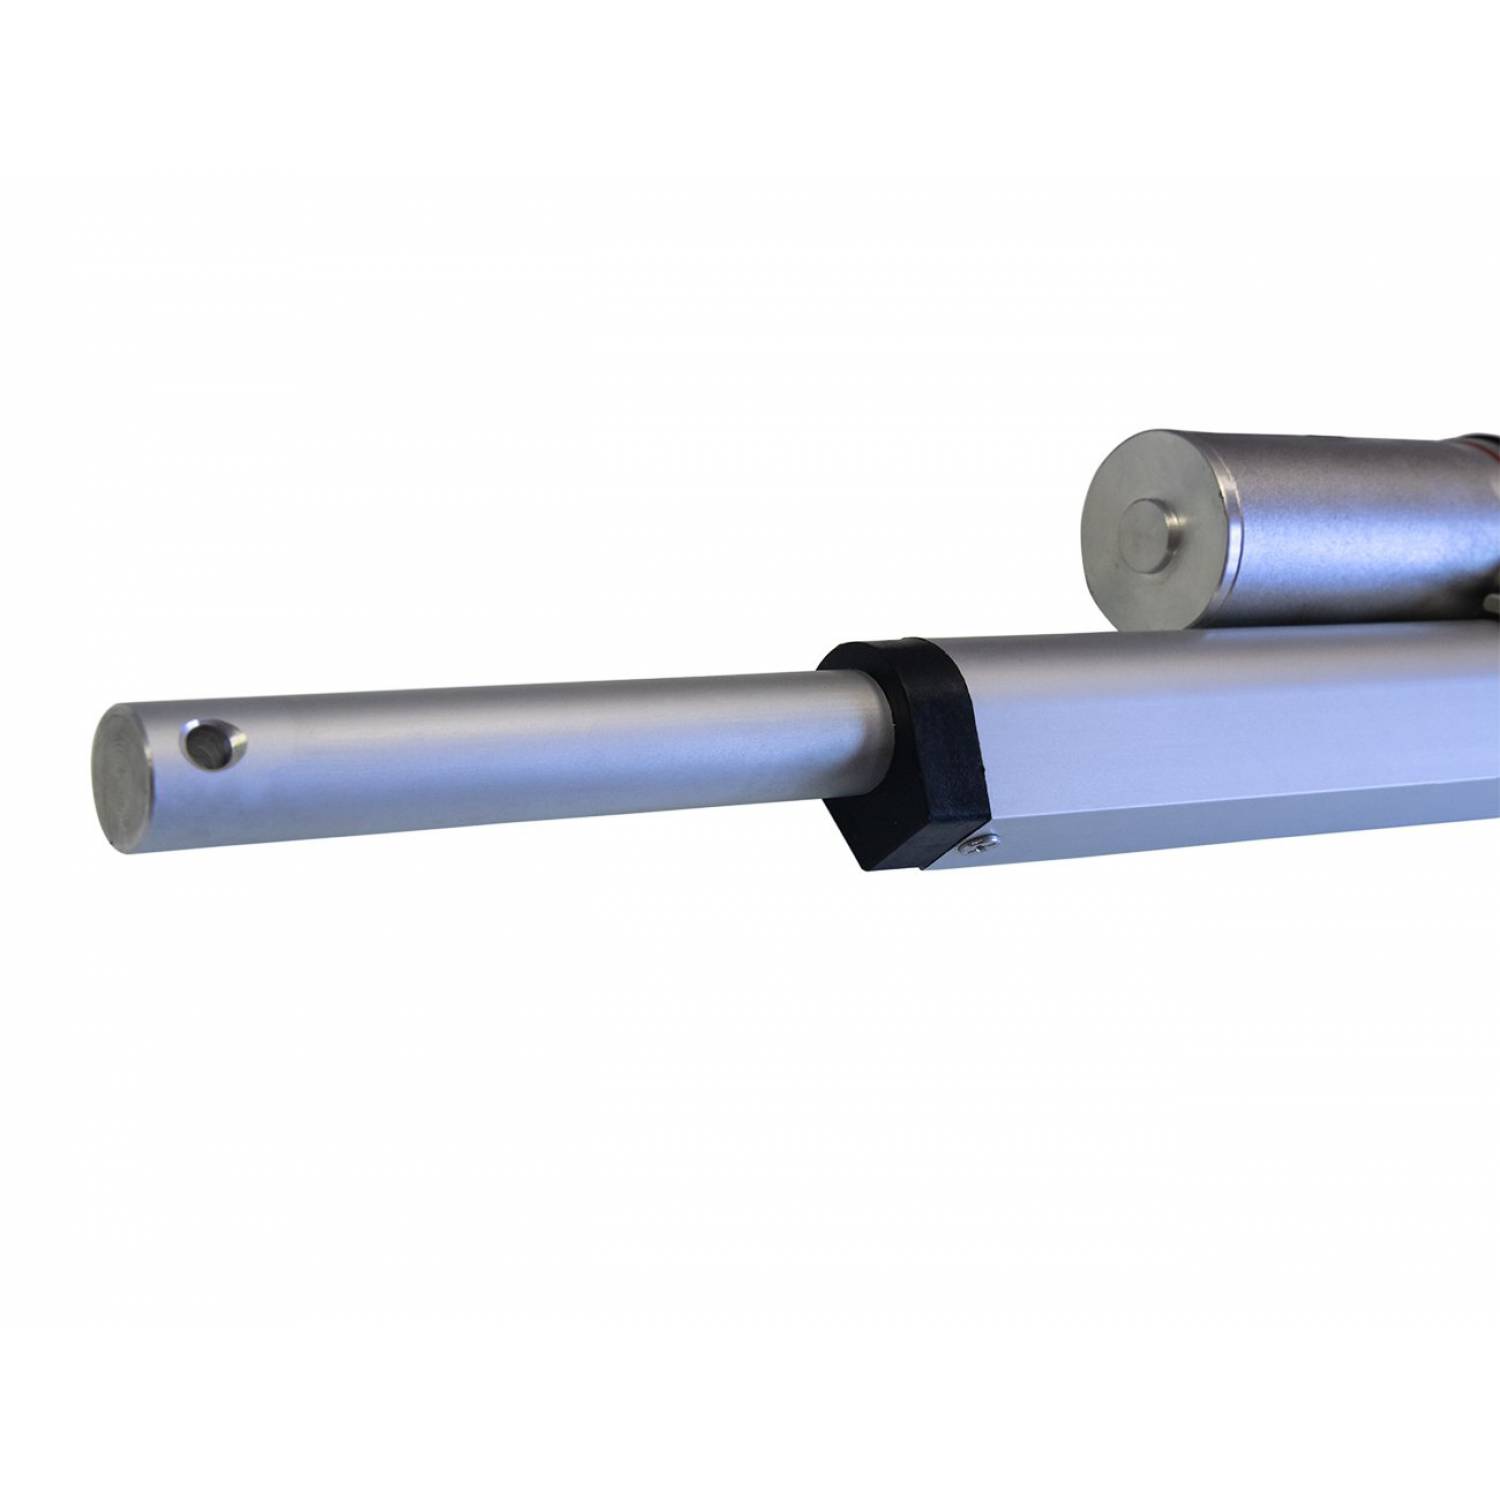 Актуатор (линейный привод) длина 100 мм, питание 12 вольт , нагрузка до 130 кг, скорость 7 мм/сек